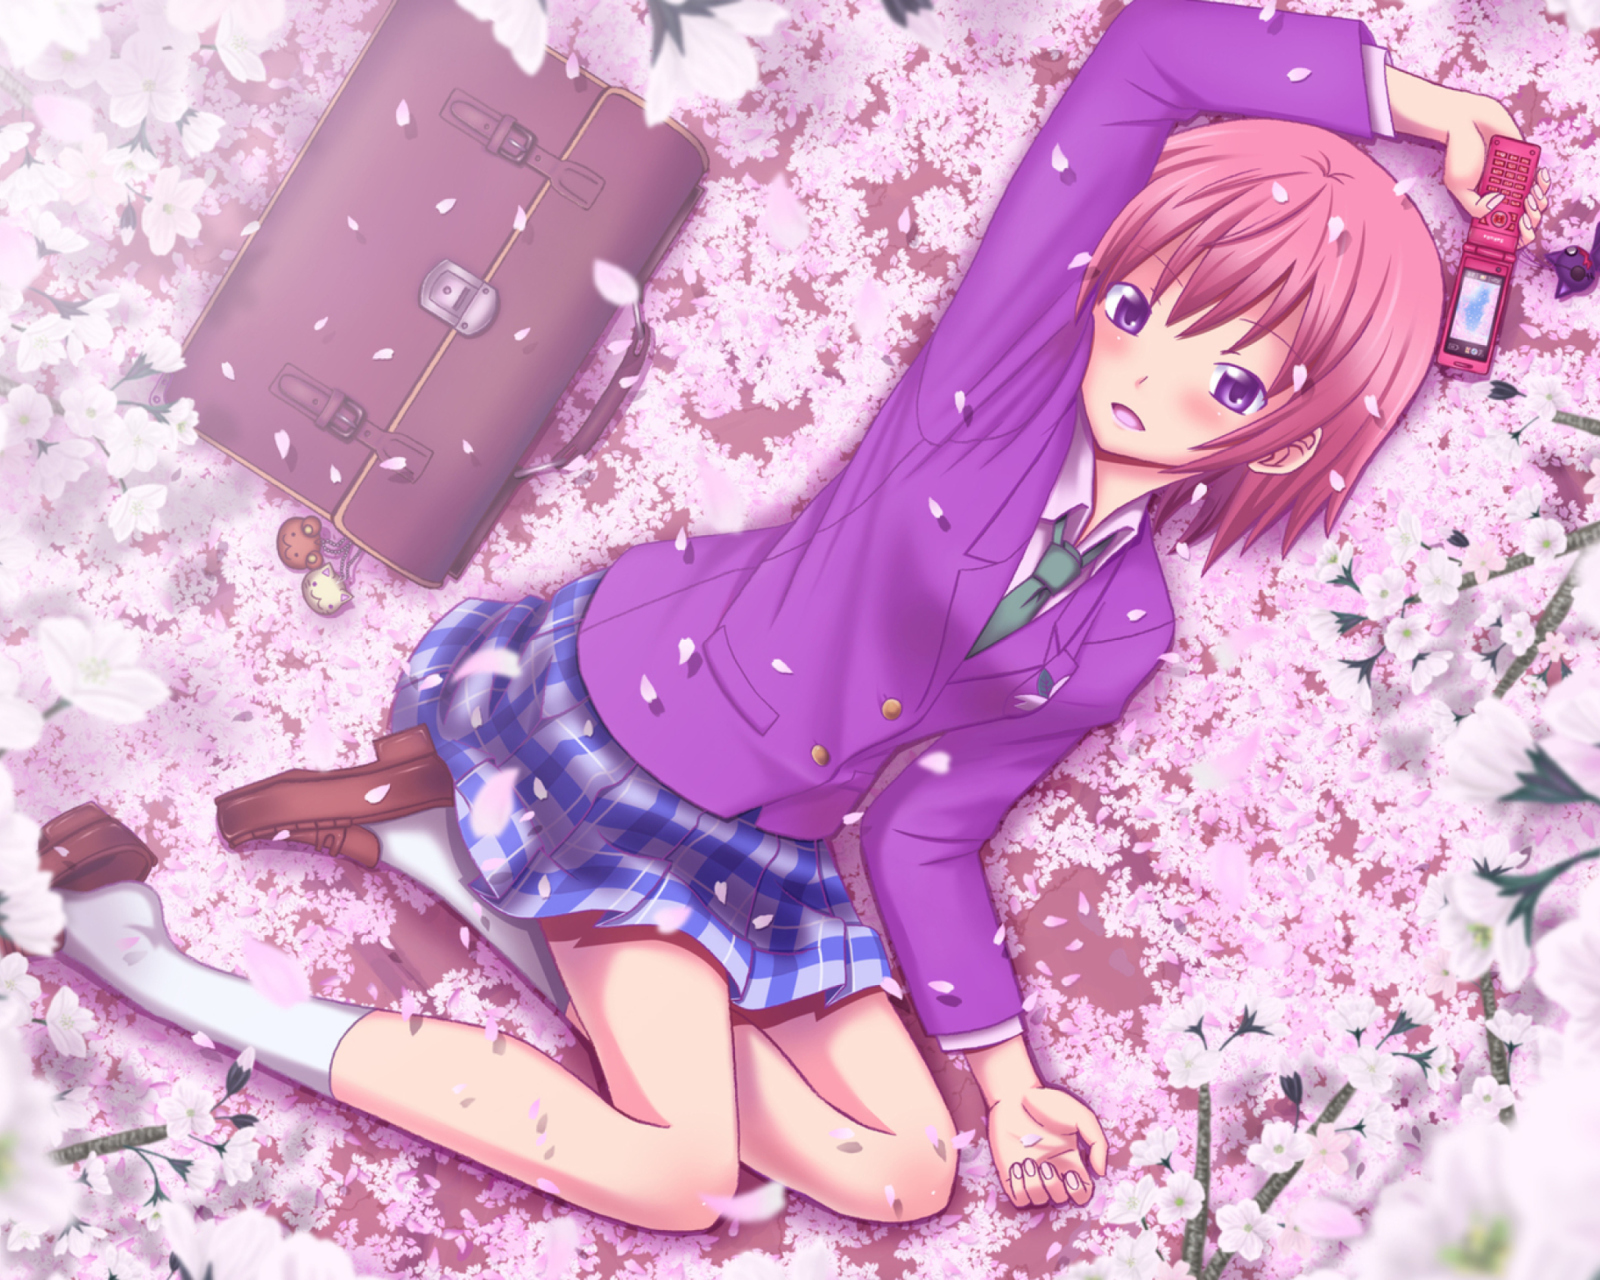 Das Anime Sakura Wallpaper 1600x1280